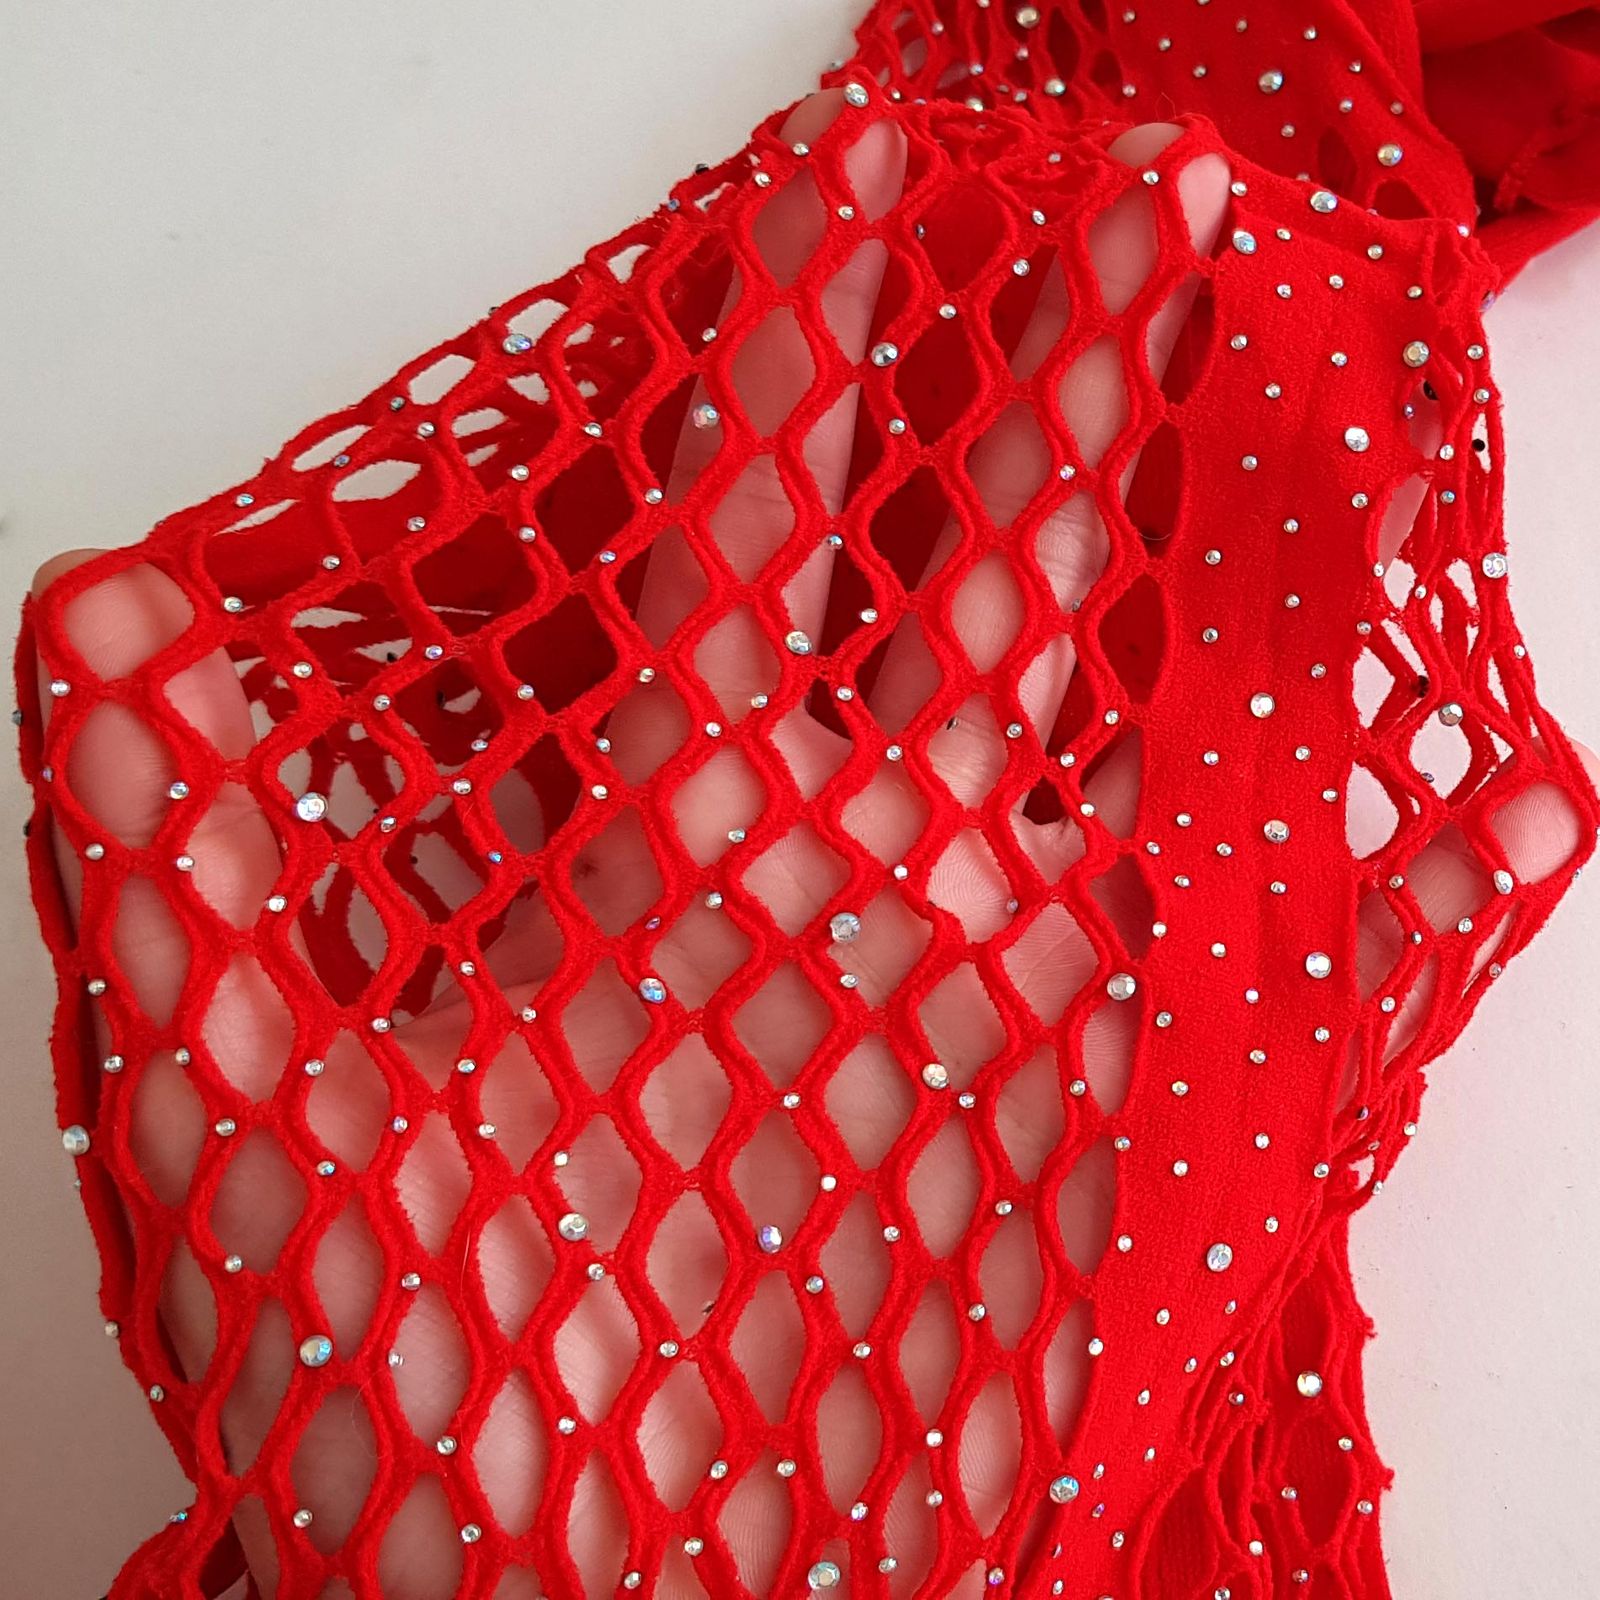 لباس خواب زنانه ماییلدا مدل نگین دار فانتزی کد 4860-7017 رنگ قرمز -  - 4